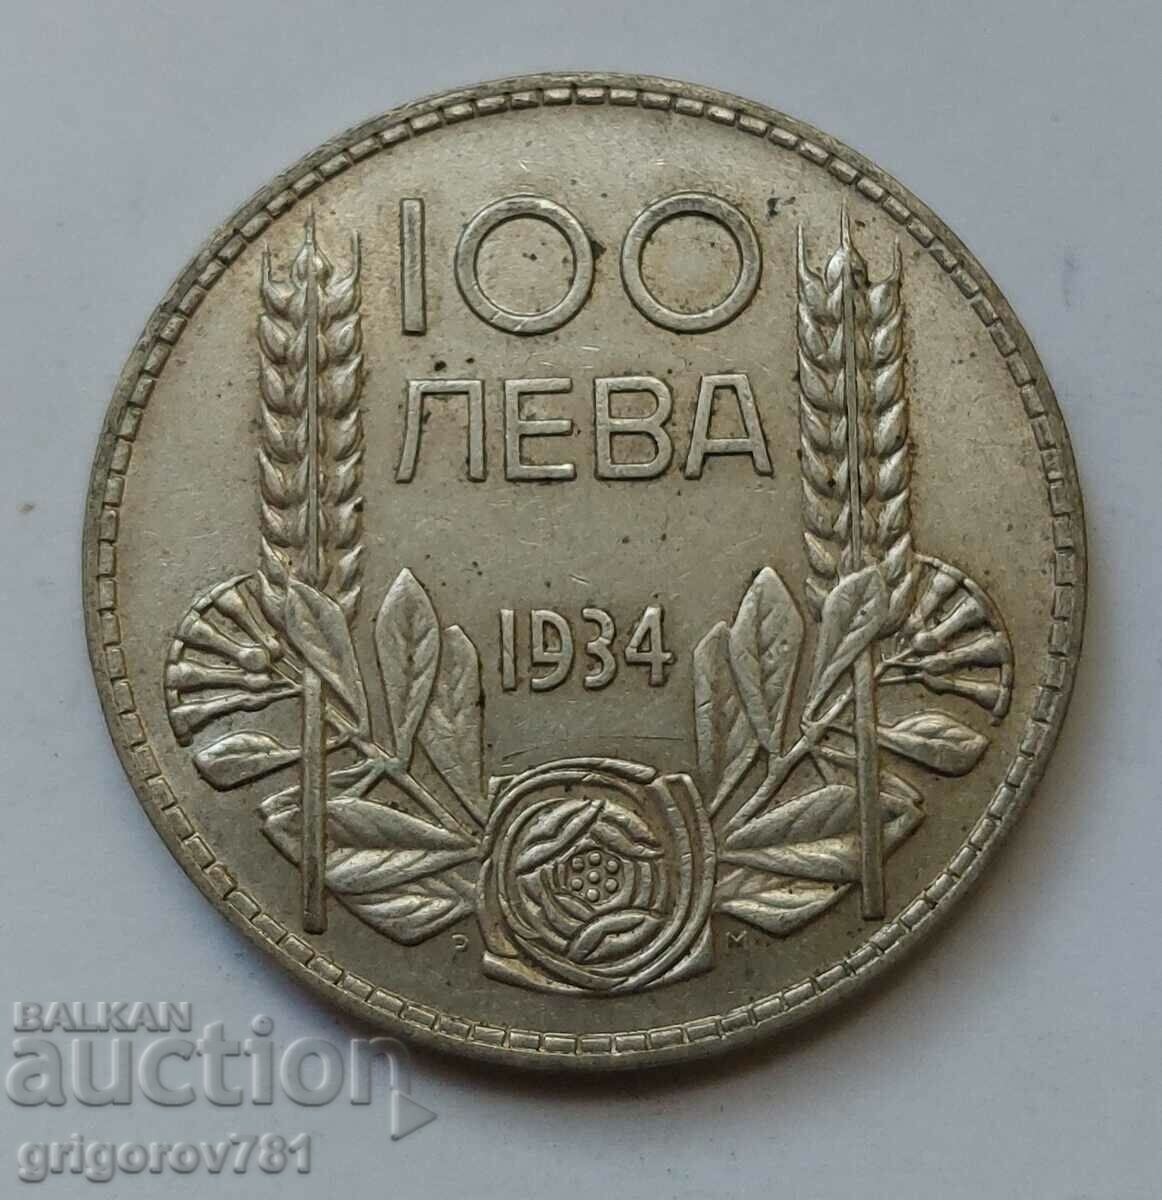 100 лева сребро България 1934 -  сребърна монета #100